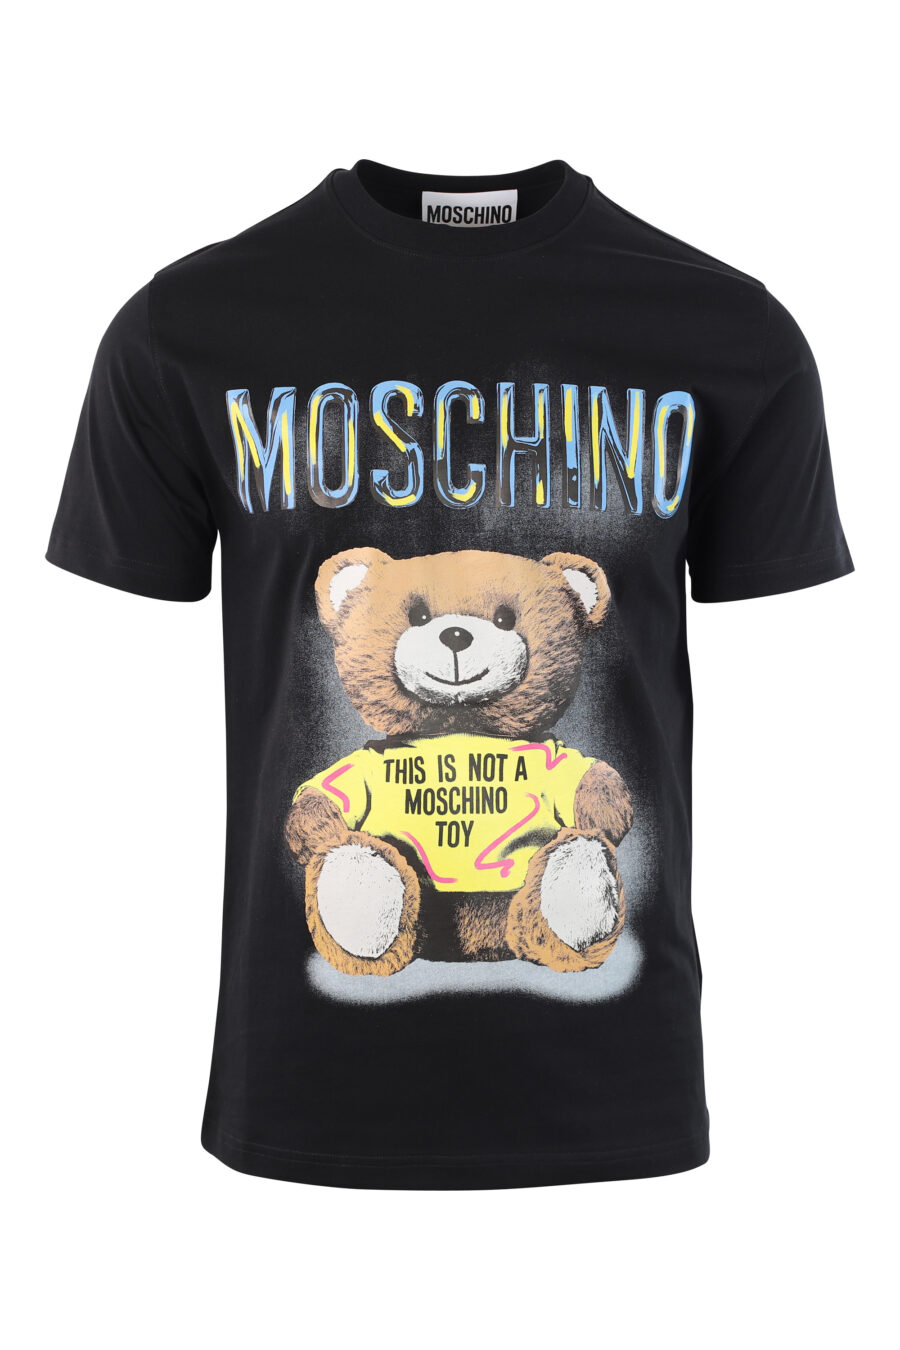 Camiseta negra con maxilogo "this is not moschino toy" - IMG 3787